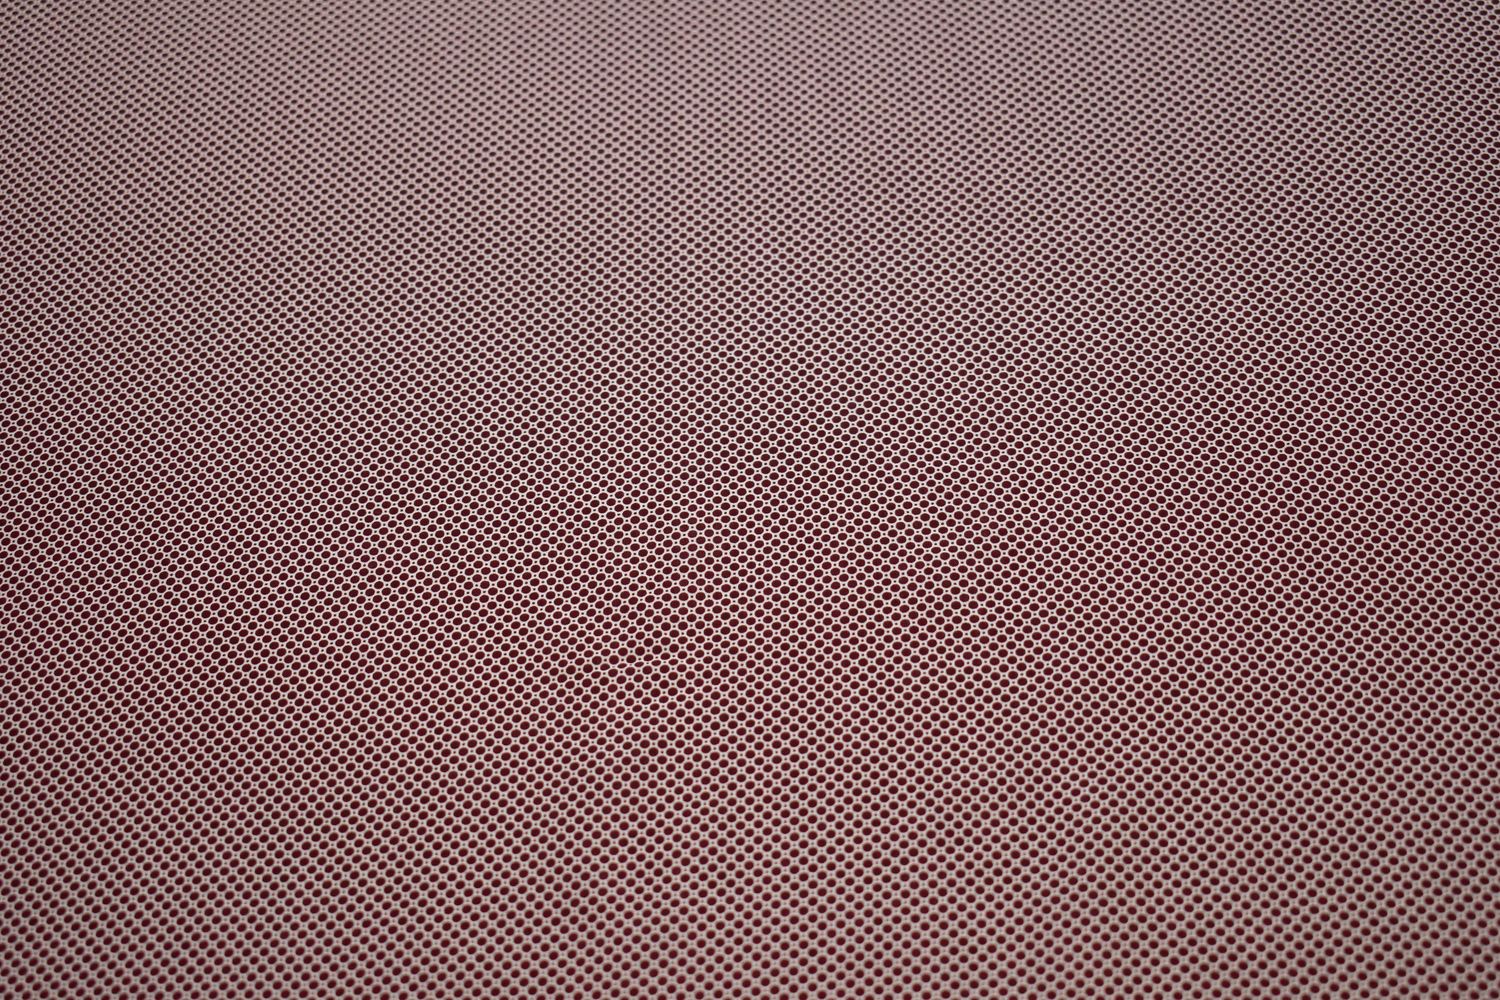 Батист бордовый белый круги W-127515